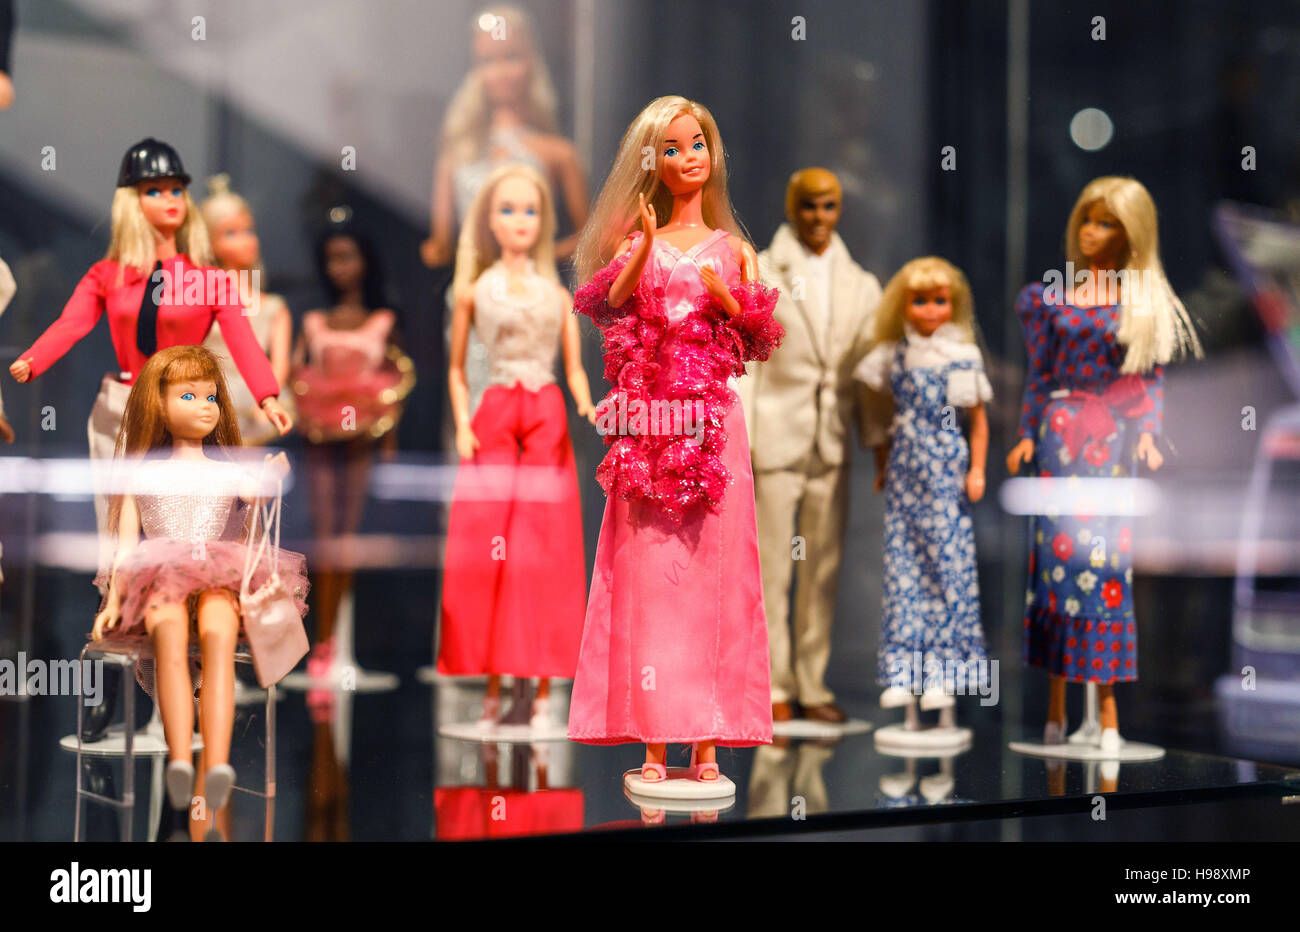 Celle, Deutschland. 18. November 2016. Barbie-Puppen zu sehen in der  Ausstellung "Busy Girl. Barbie Macht Karriere "(lit.) "Barbie macht  Karriere") im Bomann-Museum in Celle, Deutschland, 18. November 2016. Die  Ausstellung soll die